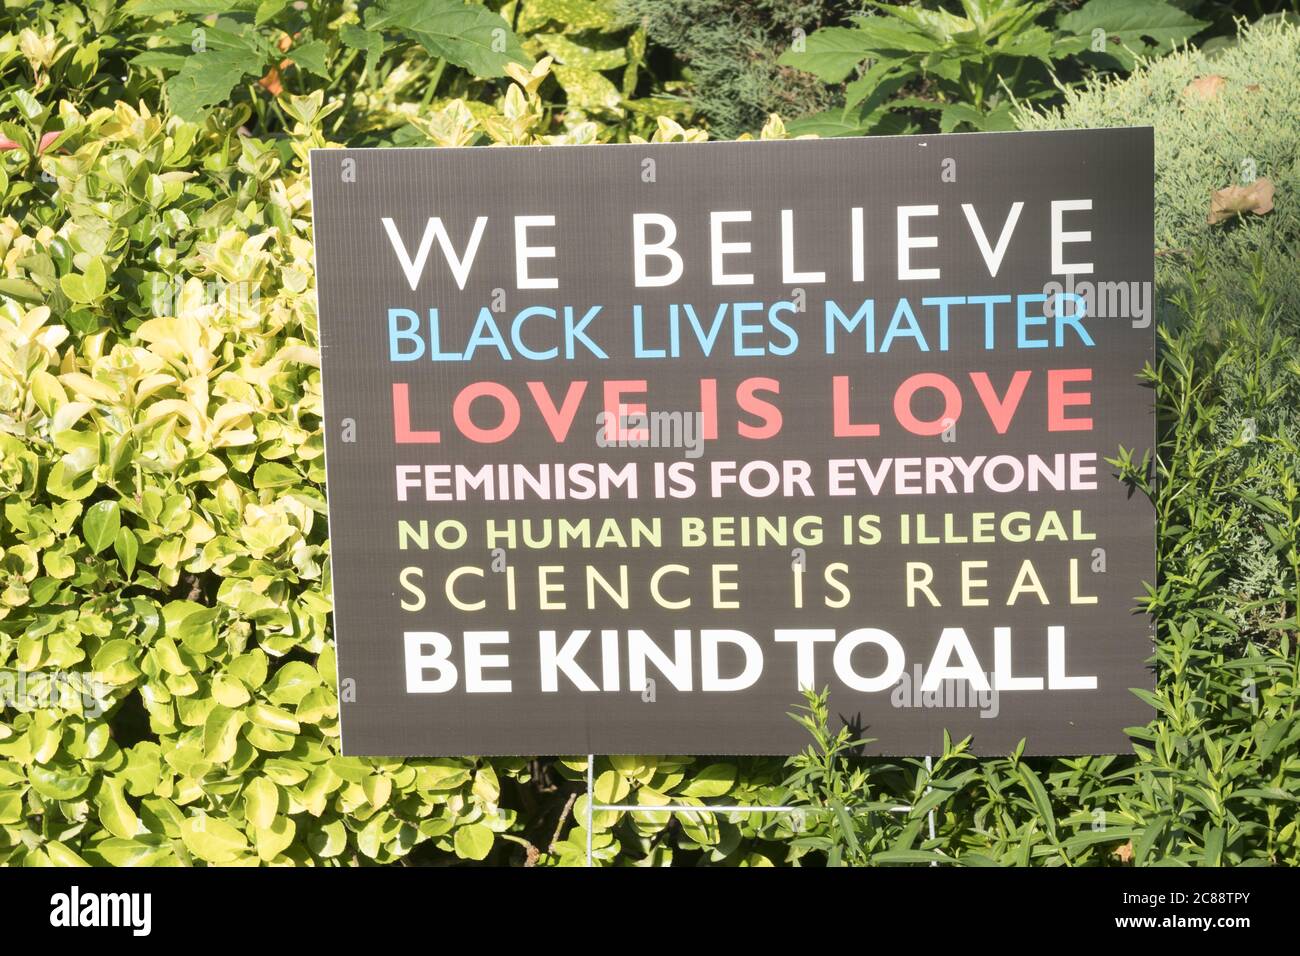 Melden Sie sich auf dem Rasen eines Familienhauses an, um ihre sozialen Überzeugungen auszudrücken und die Bewegung „Black Live Matter“ zu unterstützen. Wohnstraße, Brooklyn, New York Stockfoto